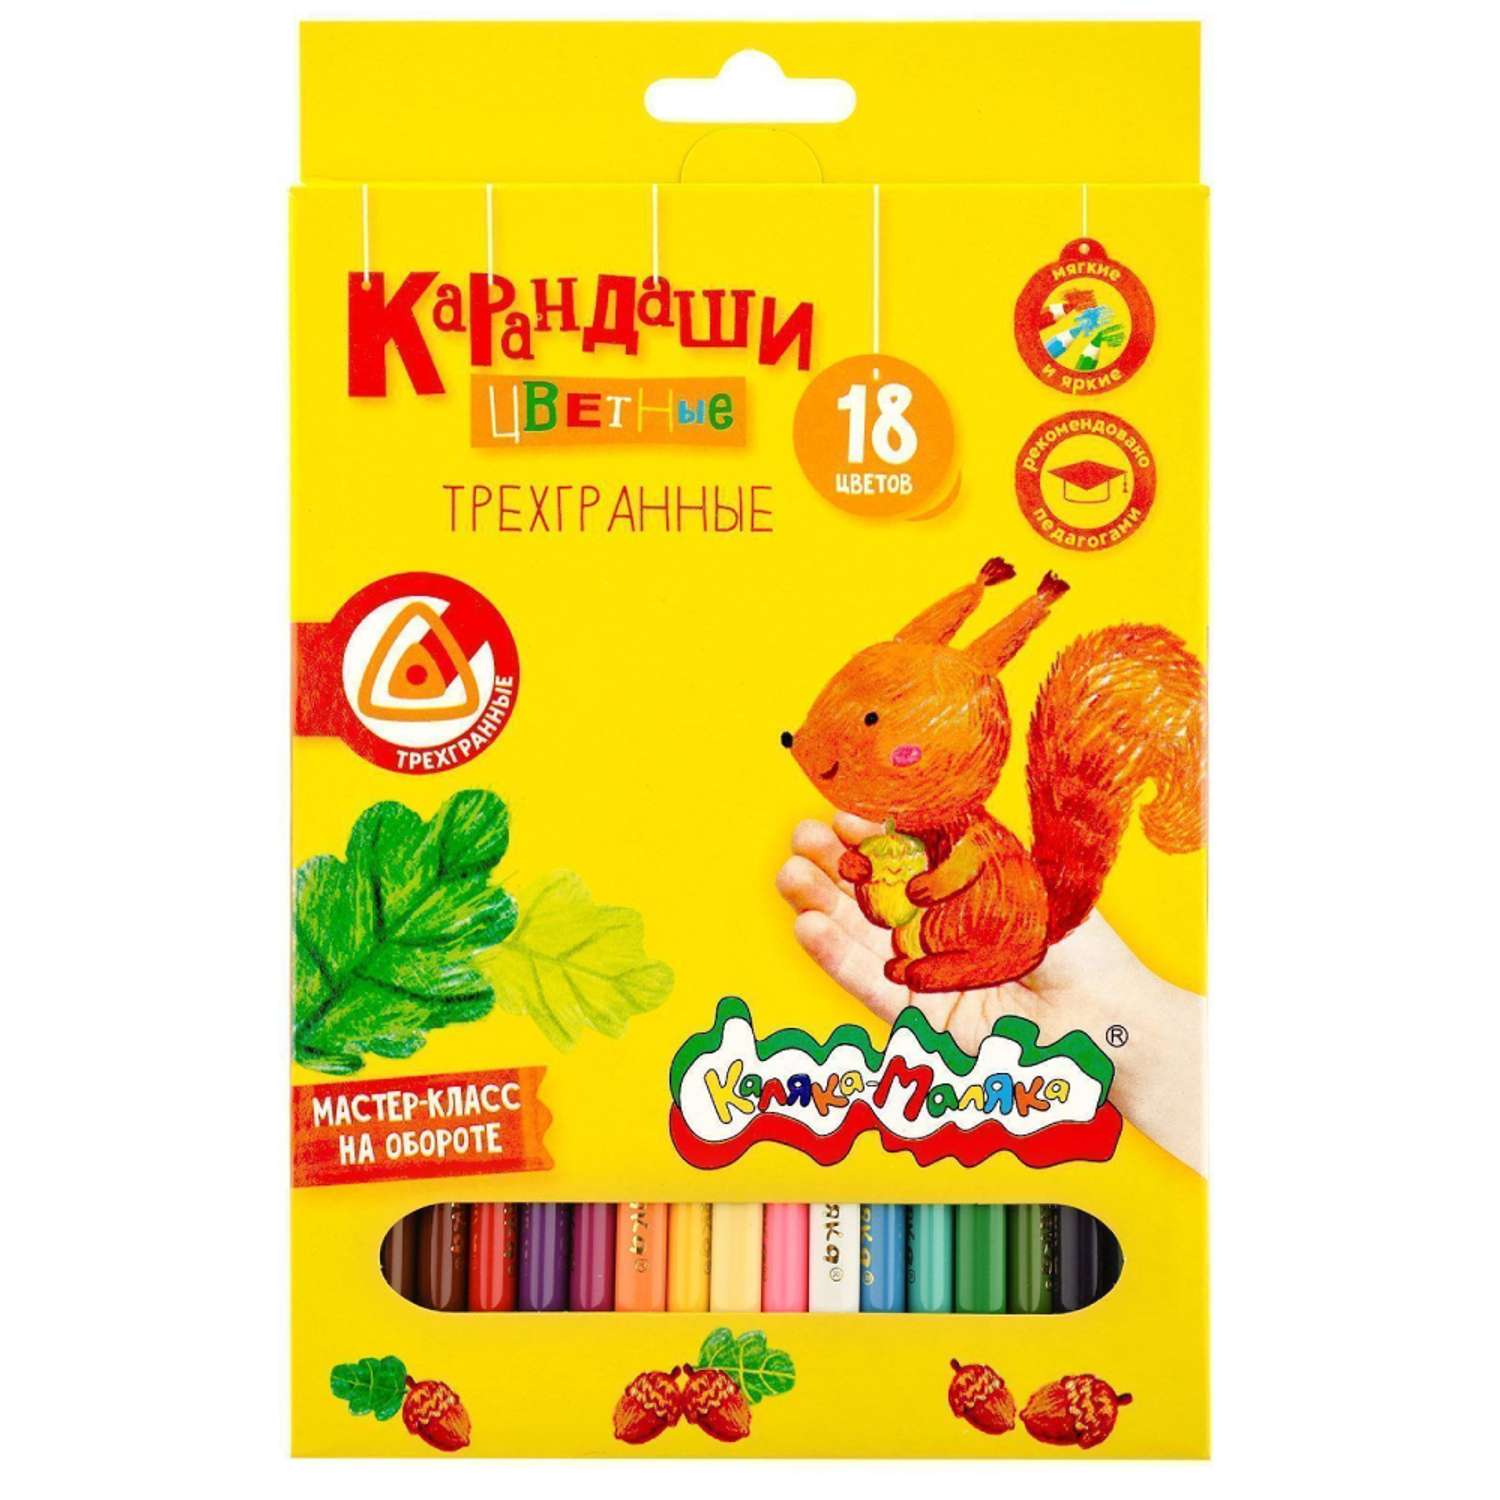 Карандаши цветные Каляка-Маляка мягкие набор 18 цветов трехгранные - фото 1